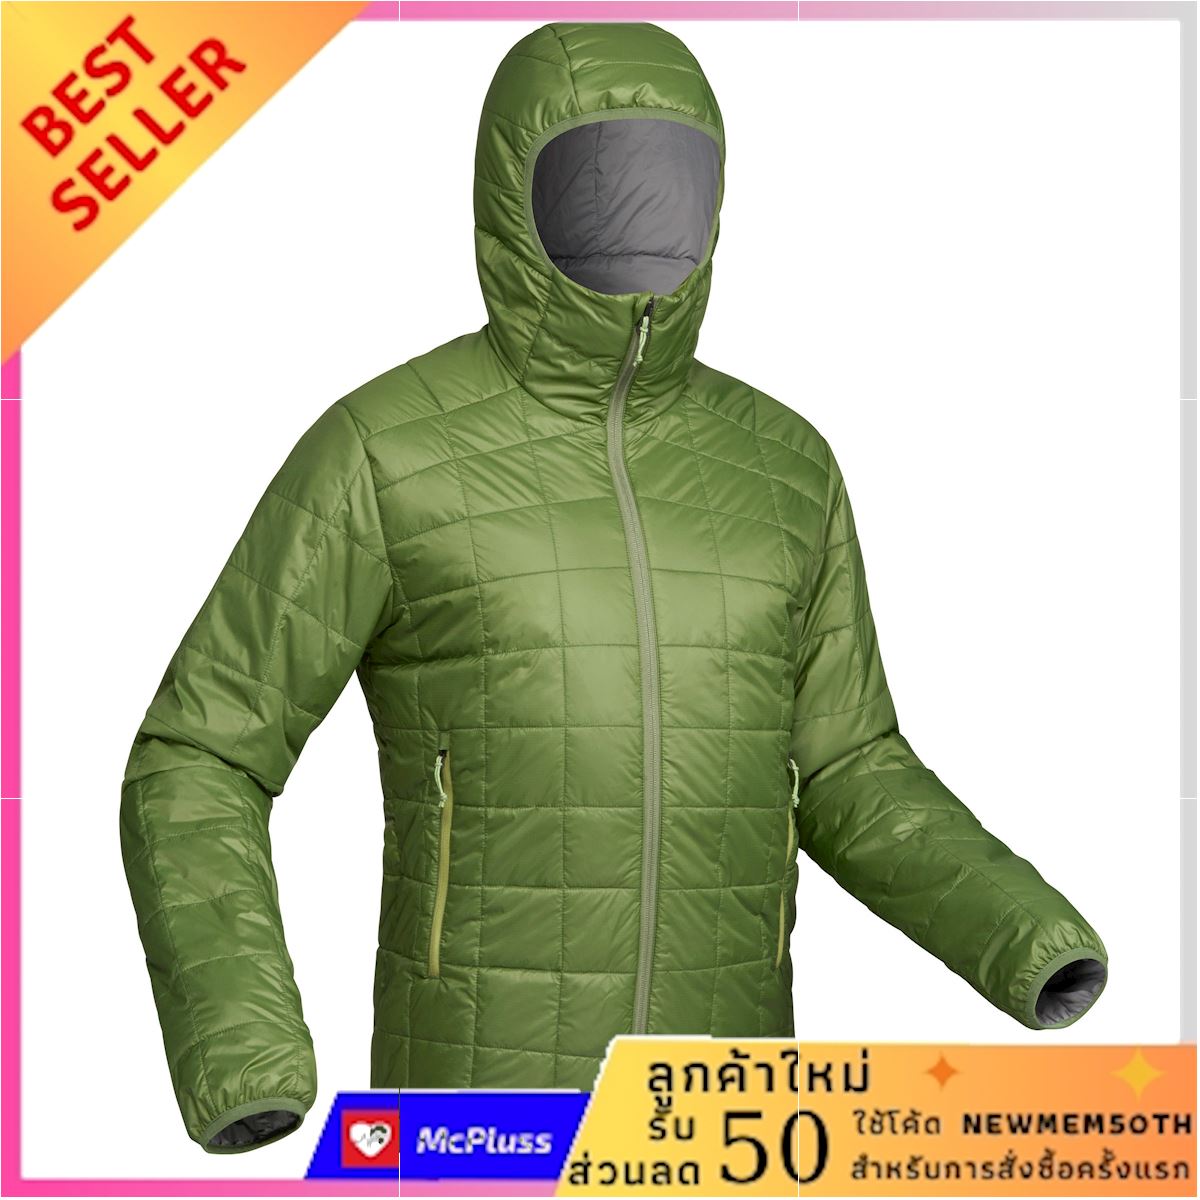 เสื้อแจ็คเก็ตดาวน์ผู้ชายมีฮู้ดสำหรับเทรคกิ้งบนภูเขารุ่น TREK 100 (สีเขียว) สินค้าที่คุณคู่ควร